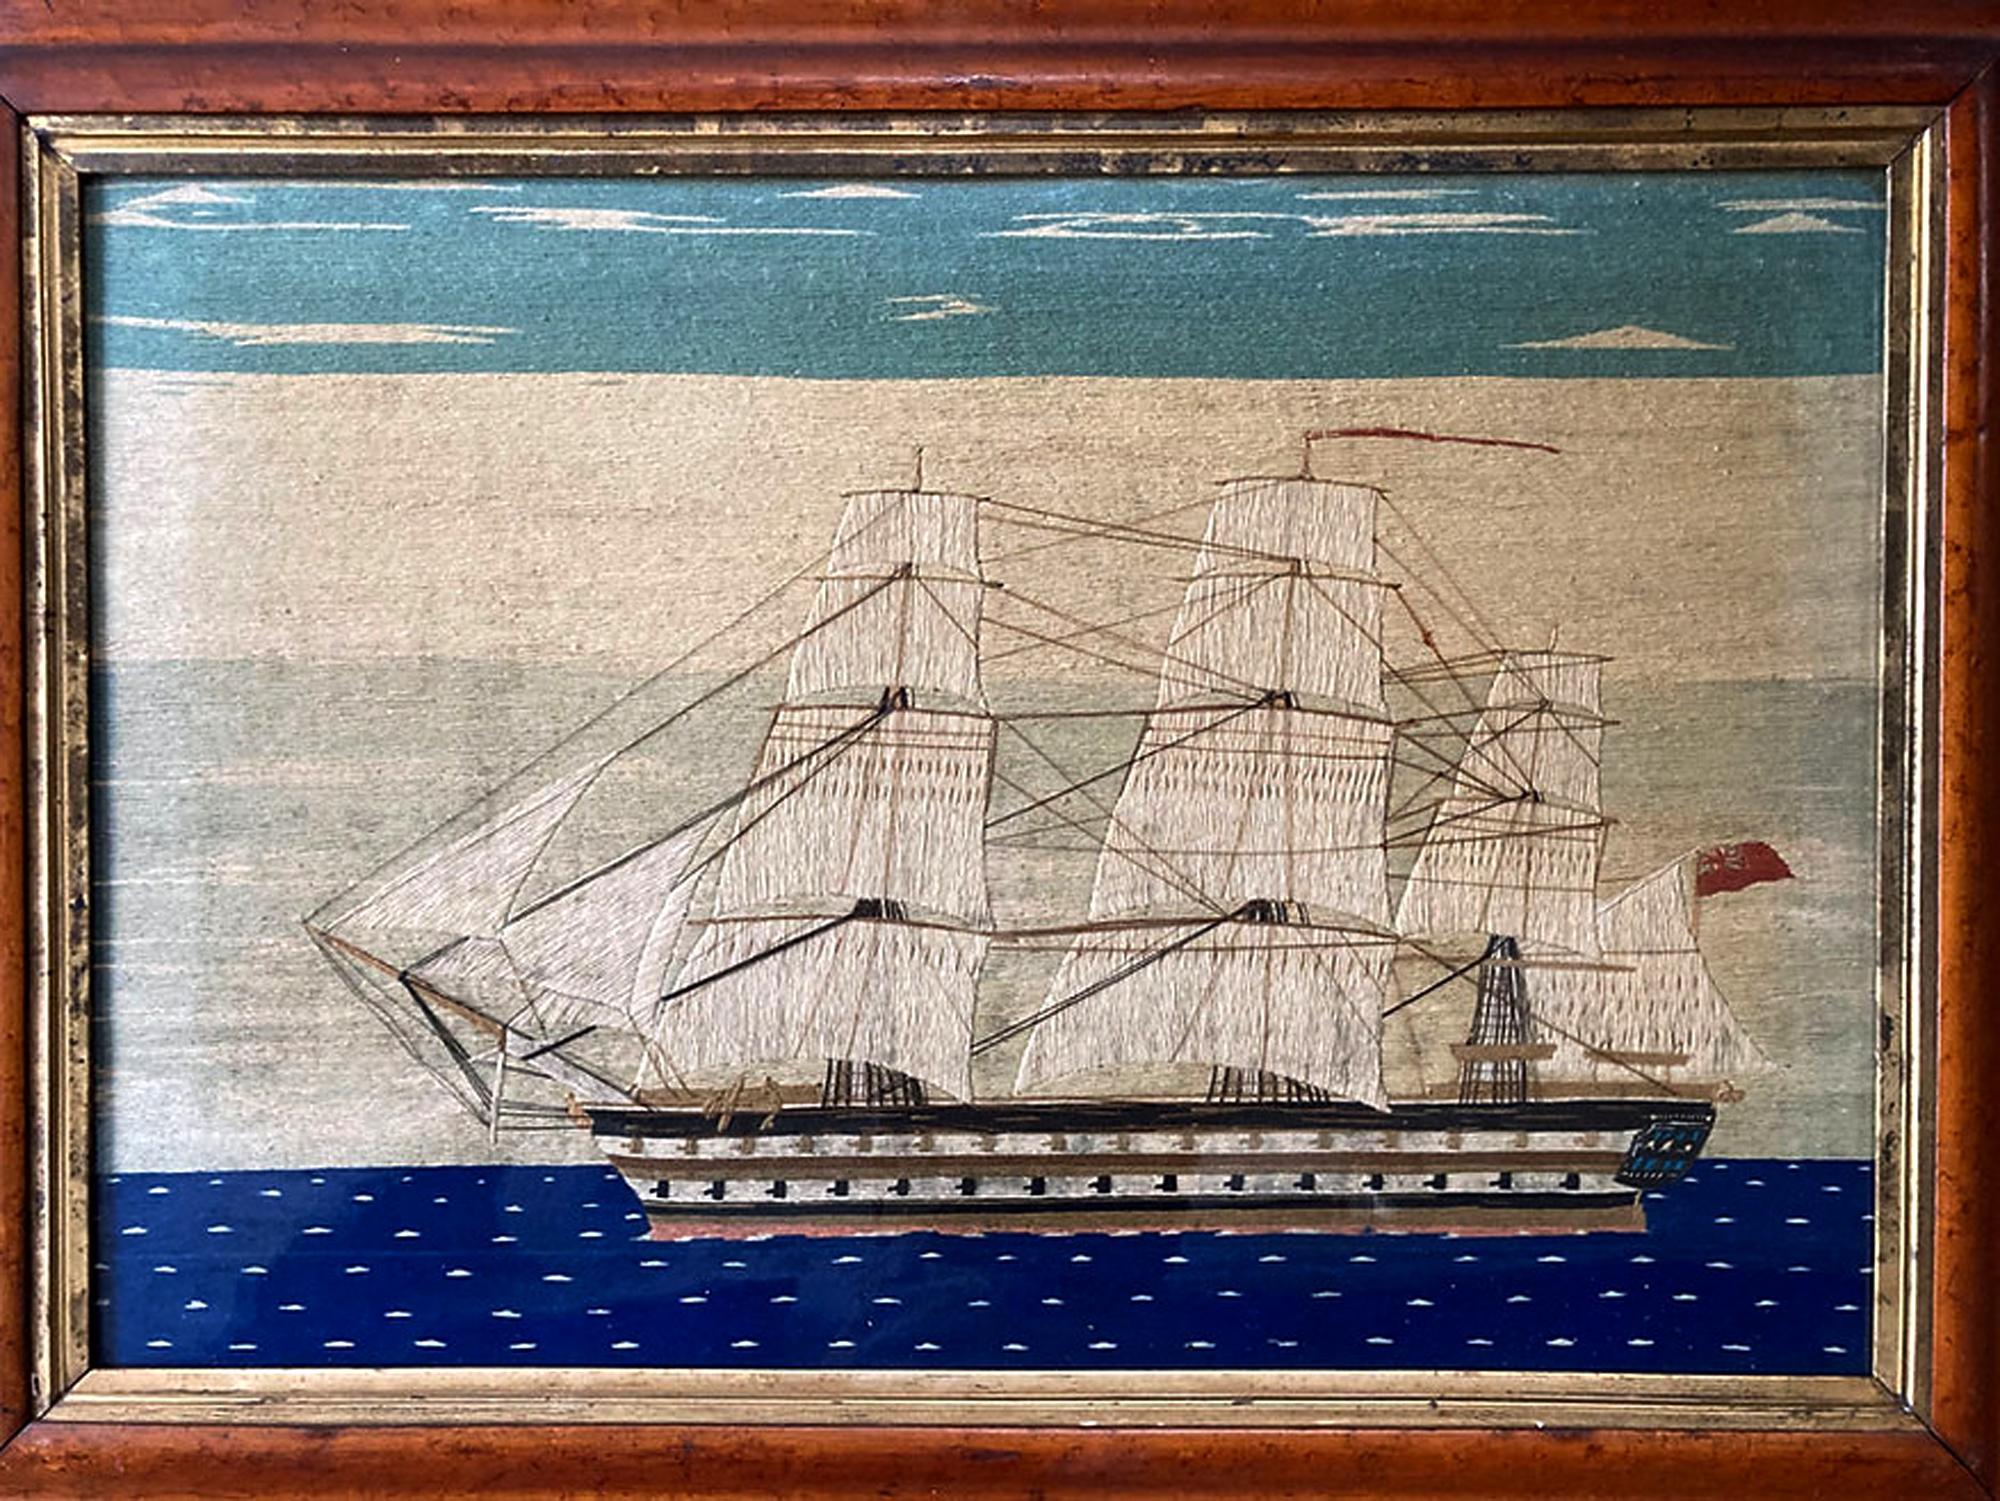 Grande laine de marin britannique du HMS Brunswick,
Circa 1865

La grande laine de marin représente l'image d'un cuirassé de second rang de la Royal Navy. De réputation, il s'agit du HMS Brunswick lancé en juin 1855 avec quatre-vingts canons, une